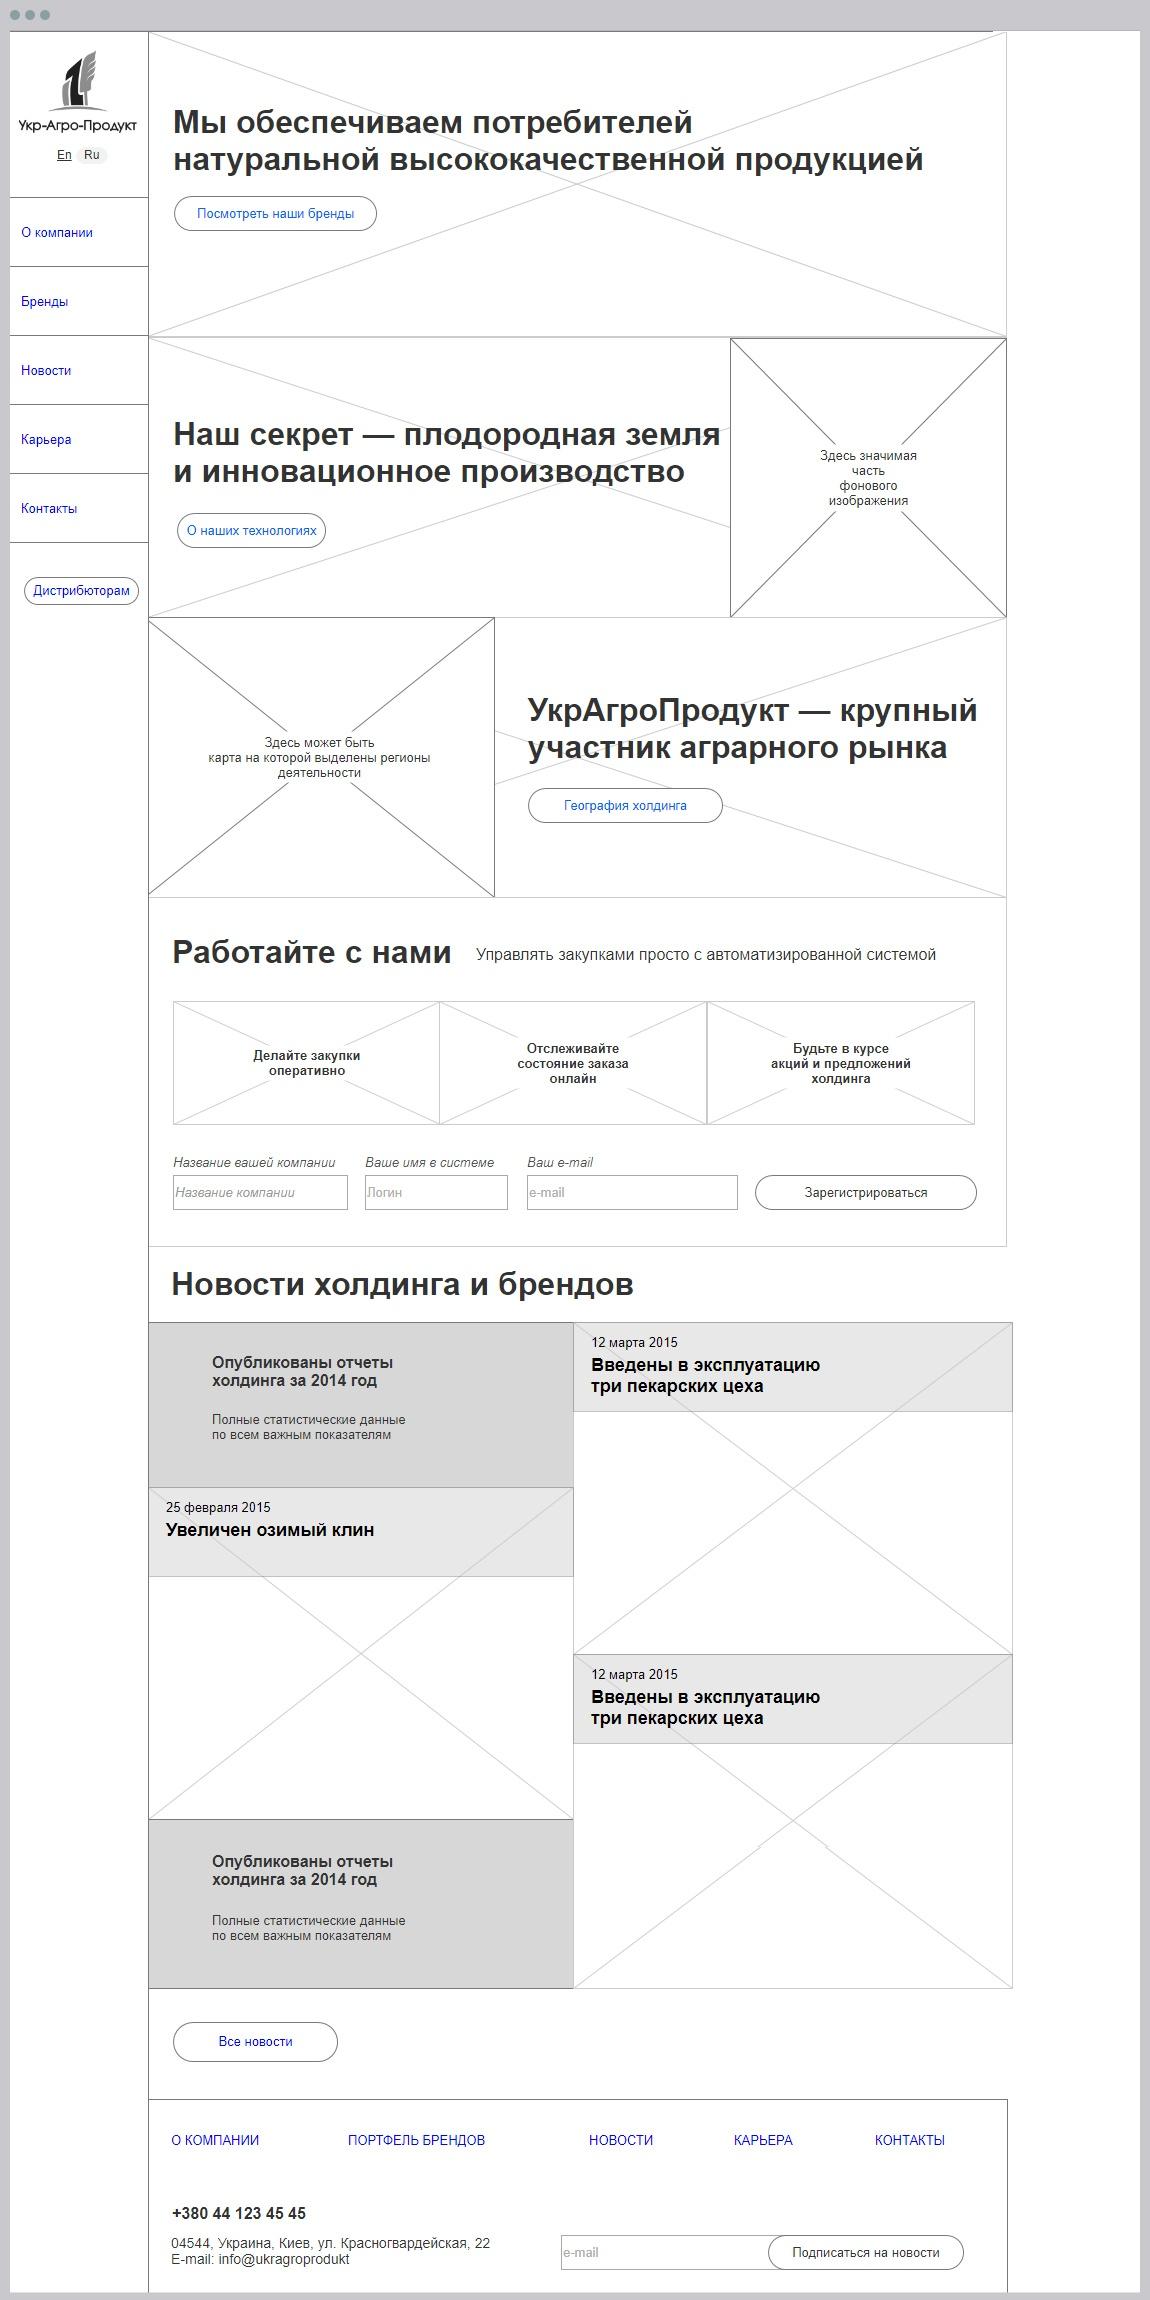 Прототип корпоративного сайта компании Украгропродукт | проекты Evergreen 10